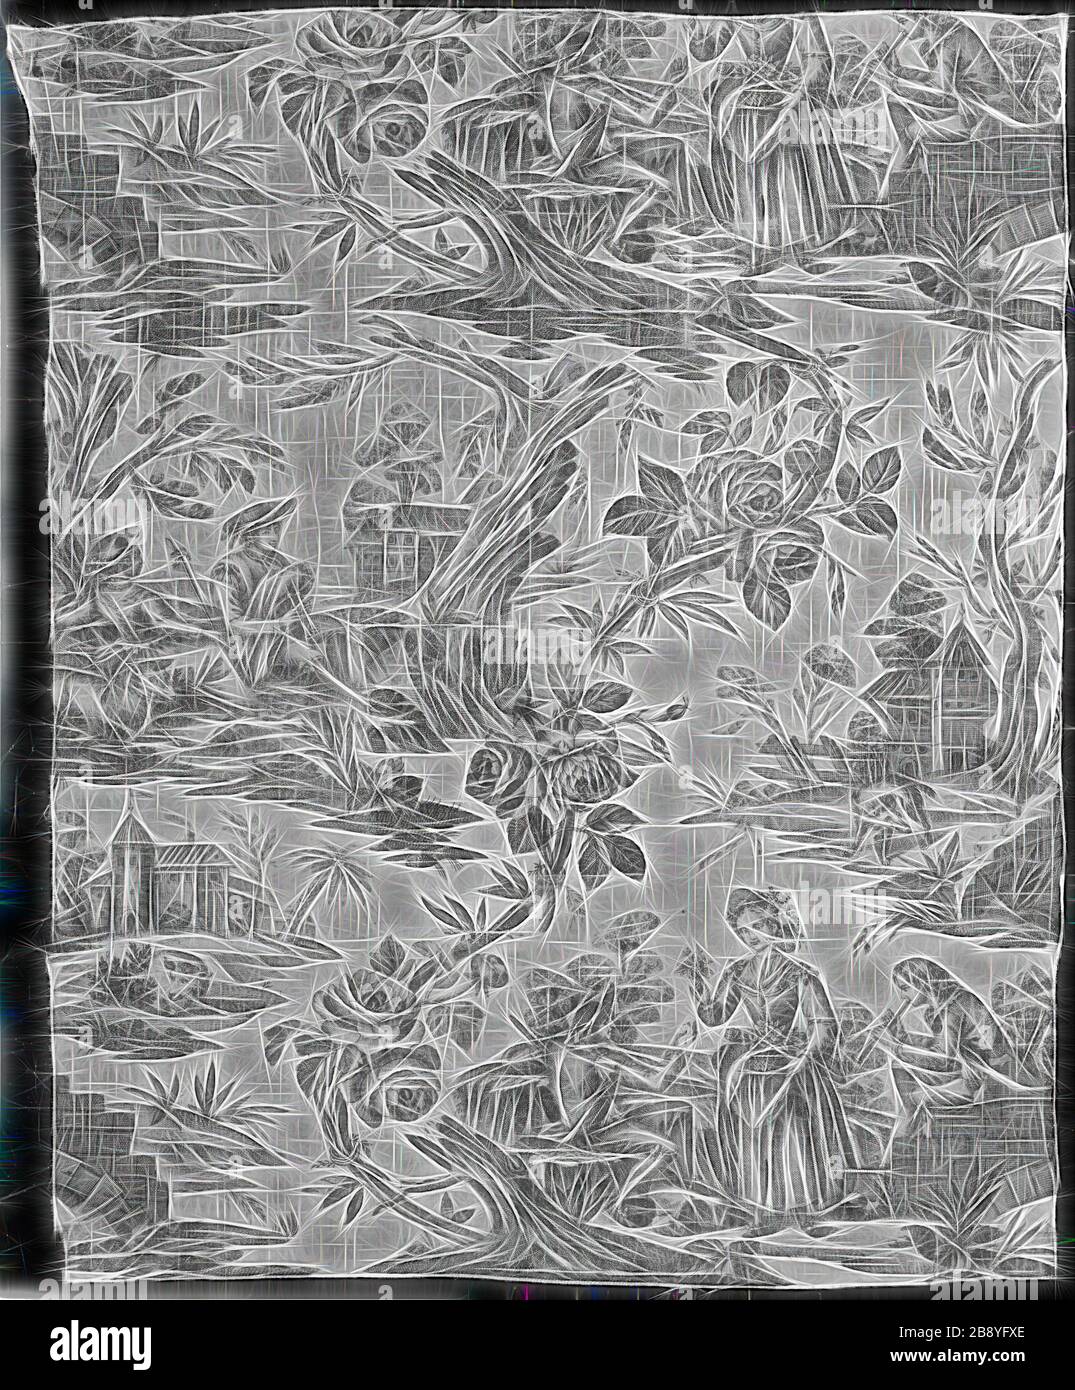 Pannello (tessuto d'arredamento), 1785, prodotto da Christophe Phillipe Oberkampf (francese, 1738-1815), Francia, Jouy-en-Josas, Francia, cotone, tessitura piana, stampato in rame, non abbastanza verticale ripetere, 113,9 × 93,4 cm (45 1/4 × 36 3/4 in.), Reimagined by Gibon, disegno di calda luce luminosa e luminosa. Arte classica reinventata con un tocco moderno. La fotografia ispirata al futurismo, che abbraccia l'energia dinamica della tecnologia moderna, del movimento, della velocità e rivoluziona la cultura. Foto Stock